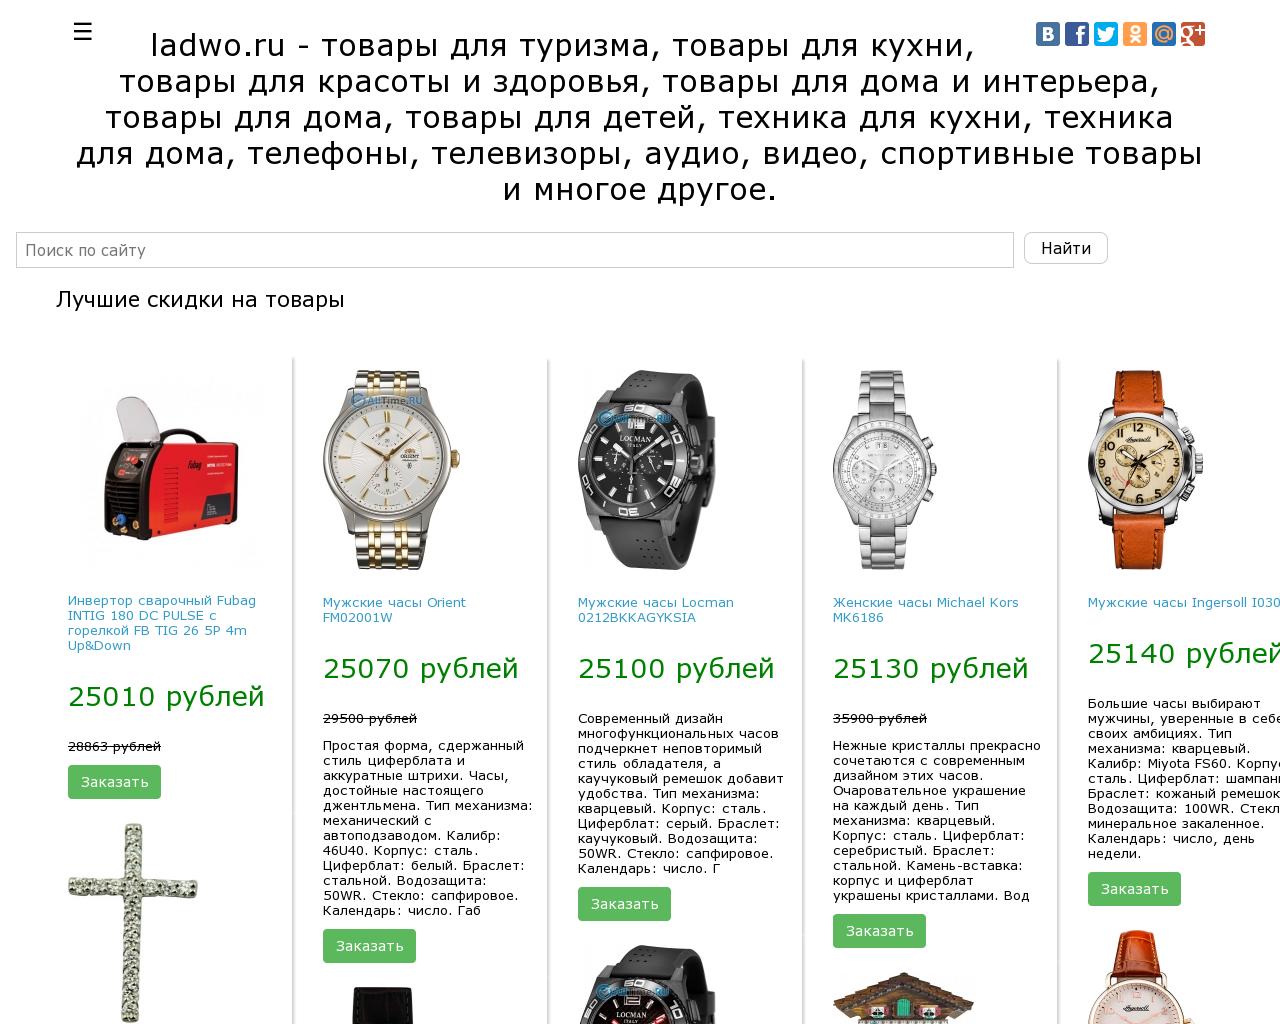 Изображение сайта ladwo.ru в разрешении 1280x1024